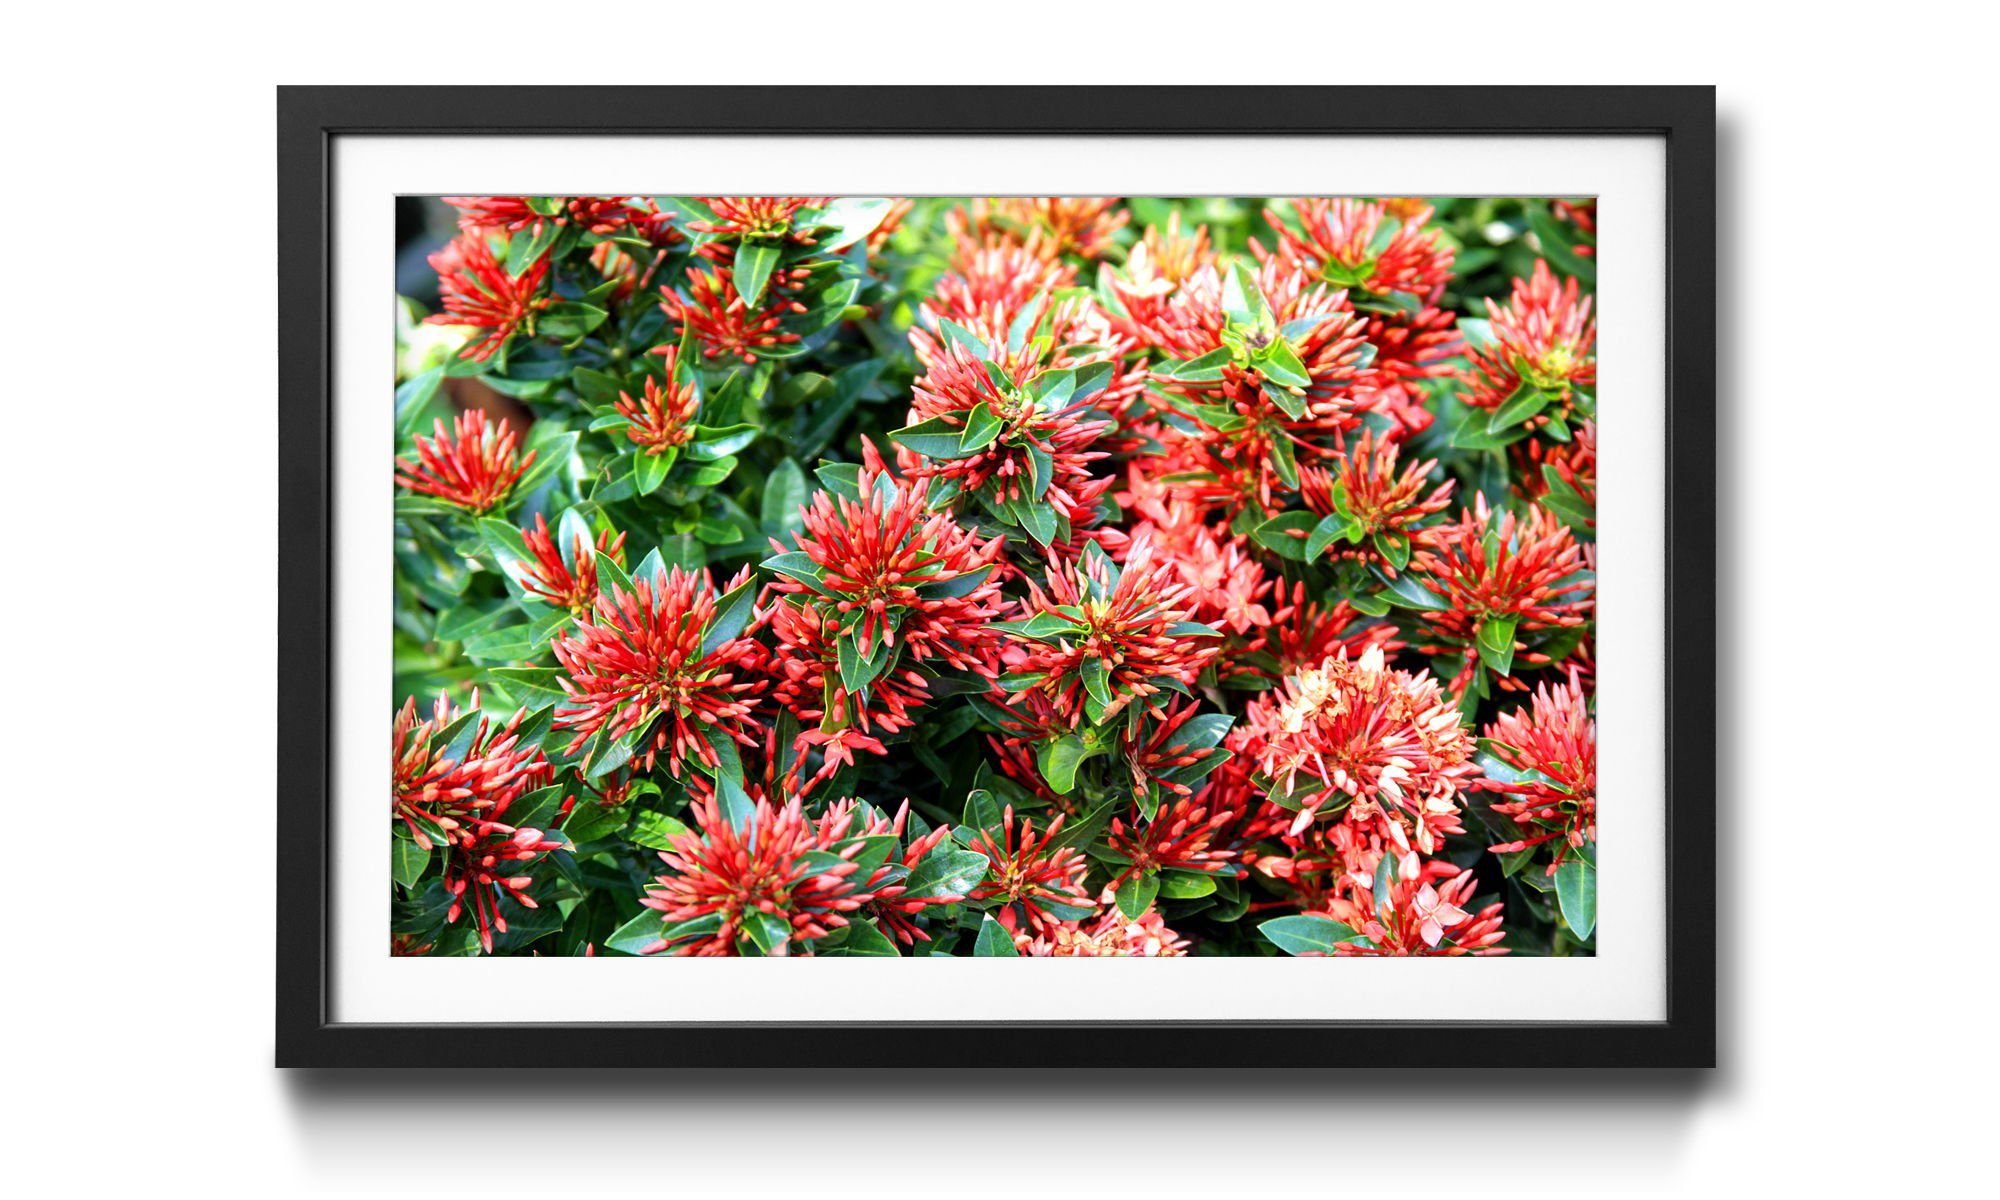 WandbilderXXL Bild in erhältlich Nature, Größen Blumen, Rahmen Wandbild, Green mit Red 4